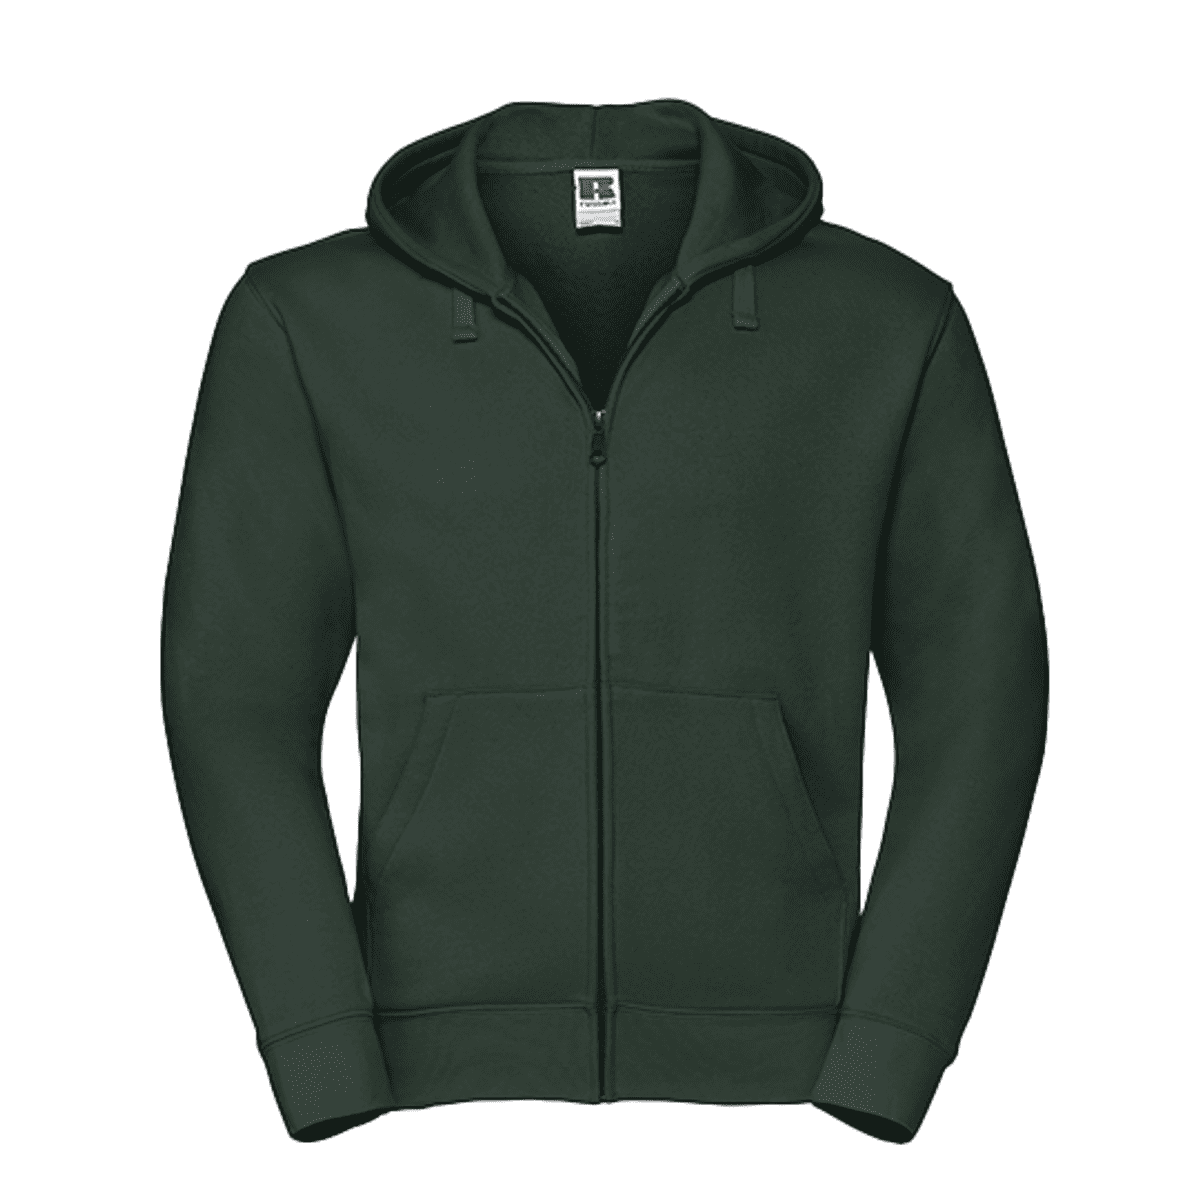 Zip-Sweaterjacke grün